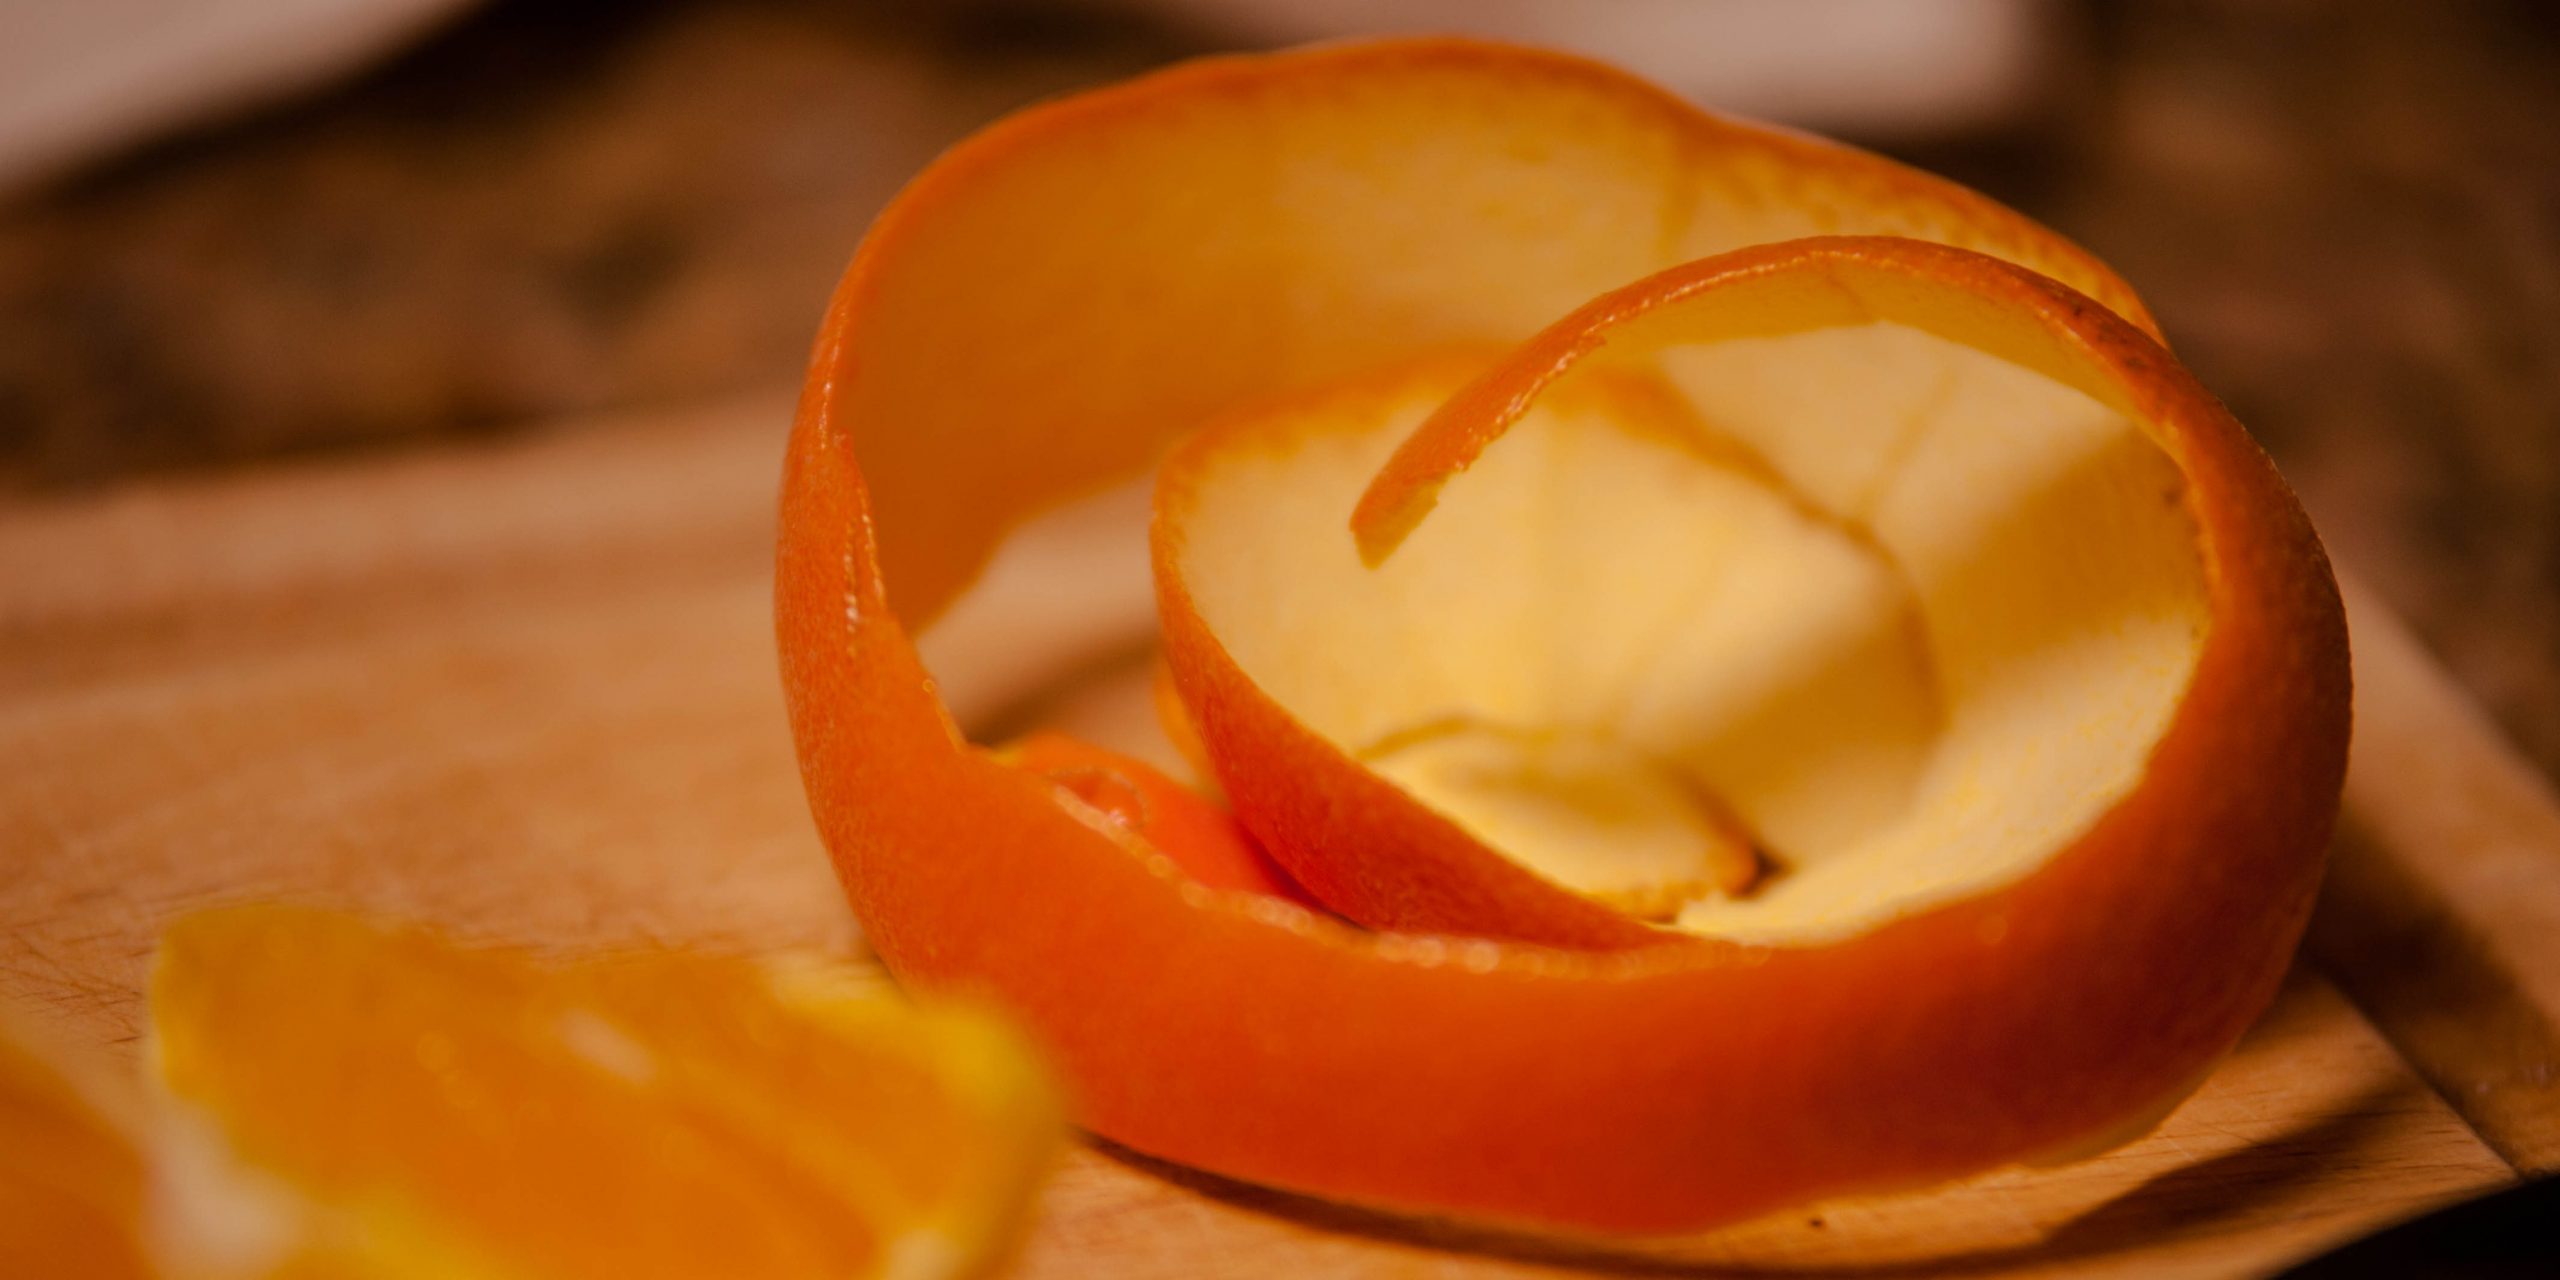 Поделки из кожуры апельсина, мандарина и других цитрусовых